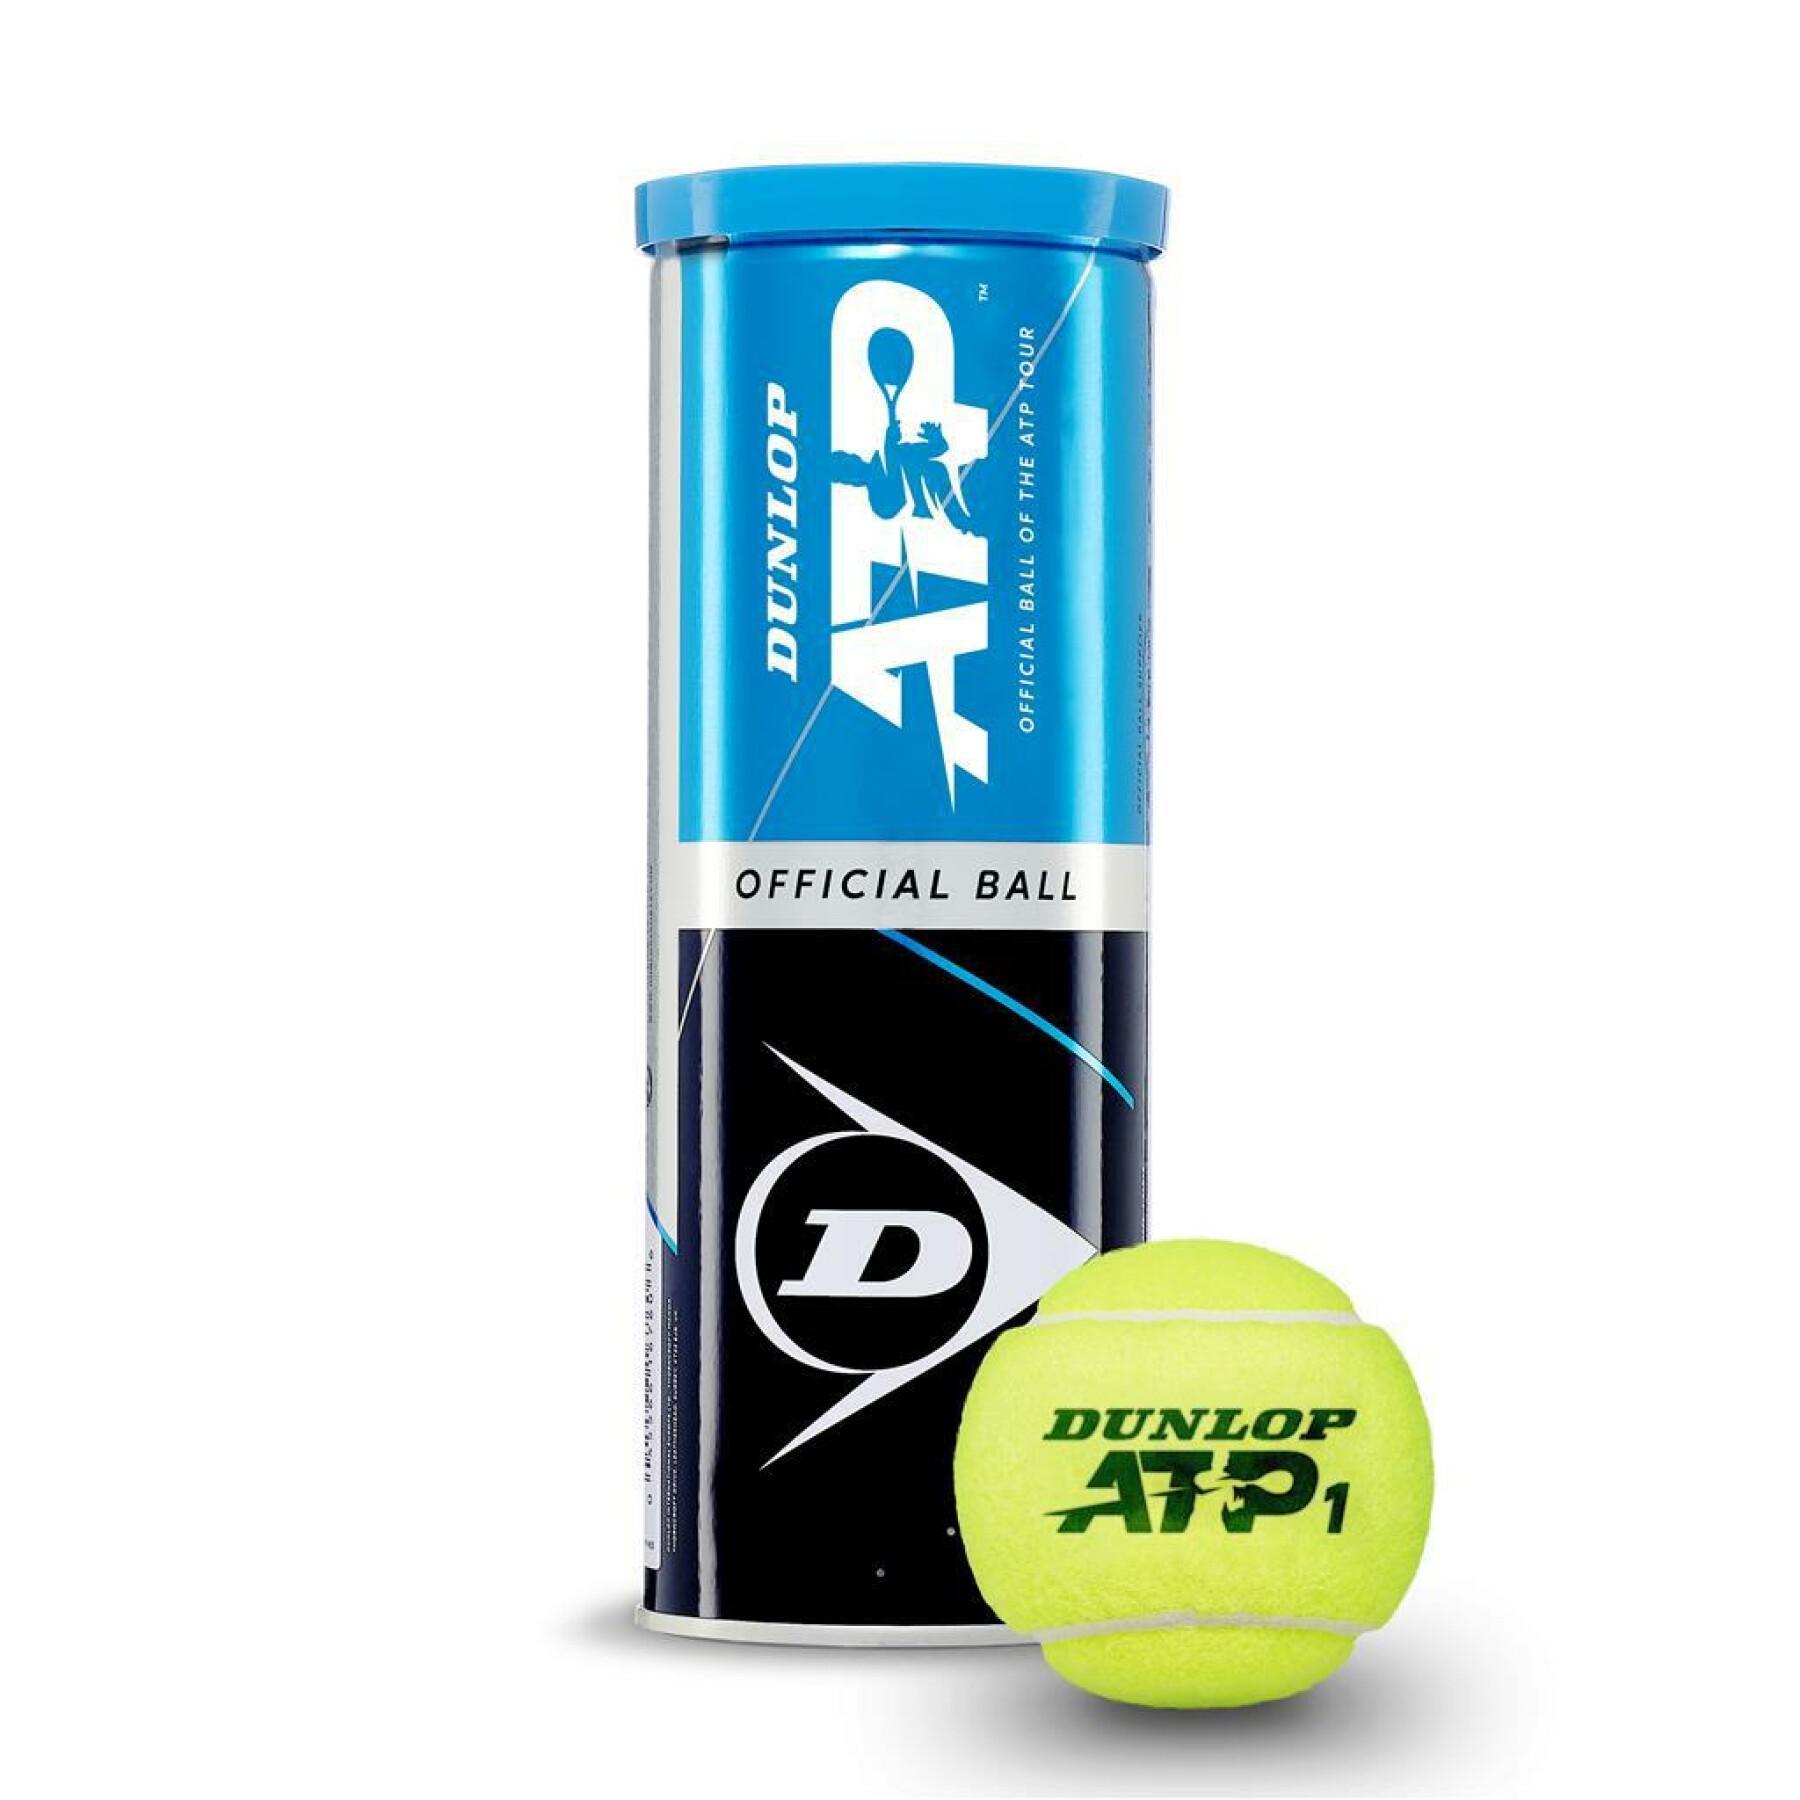 Conjunto de 3 bolas de ténis Dunlop atp